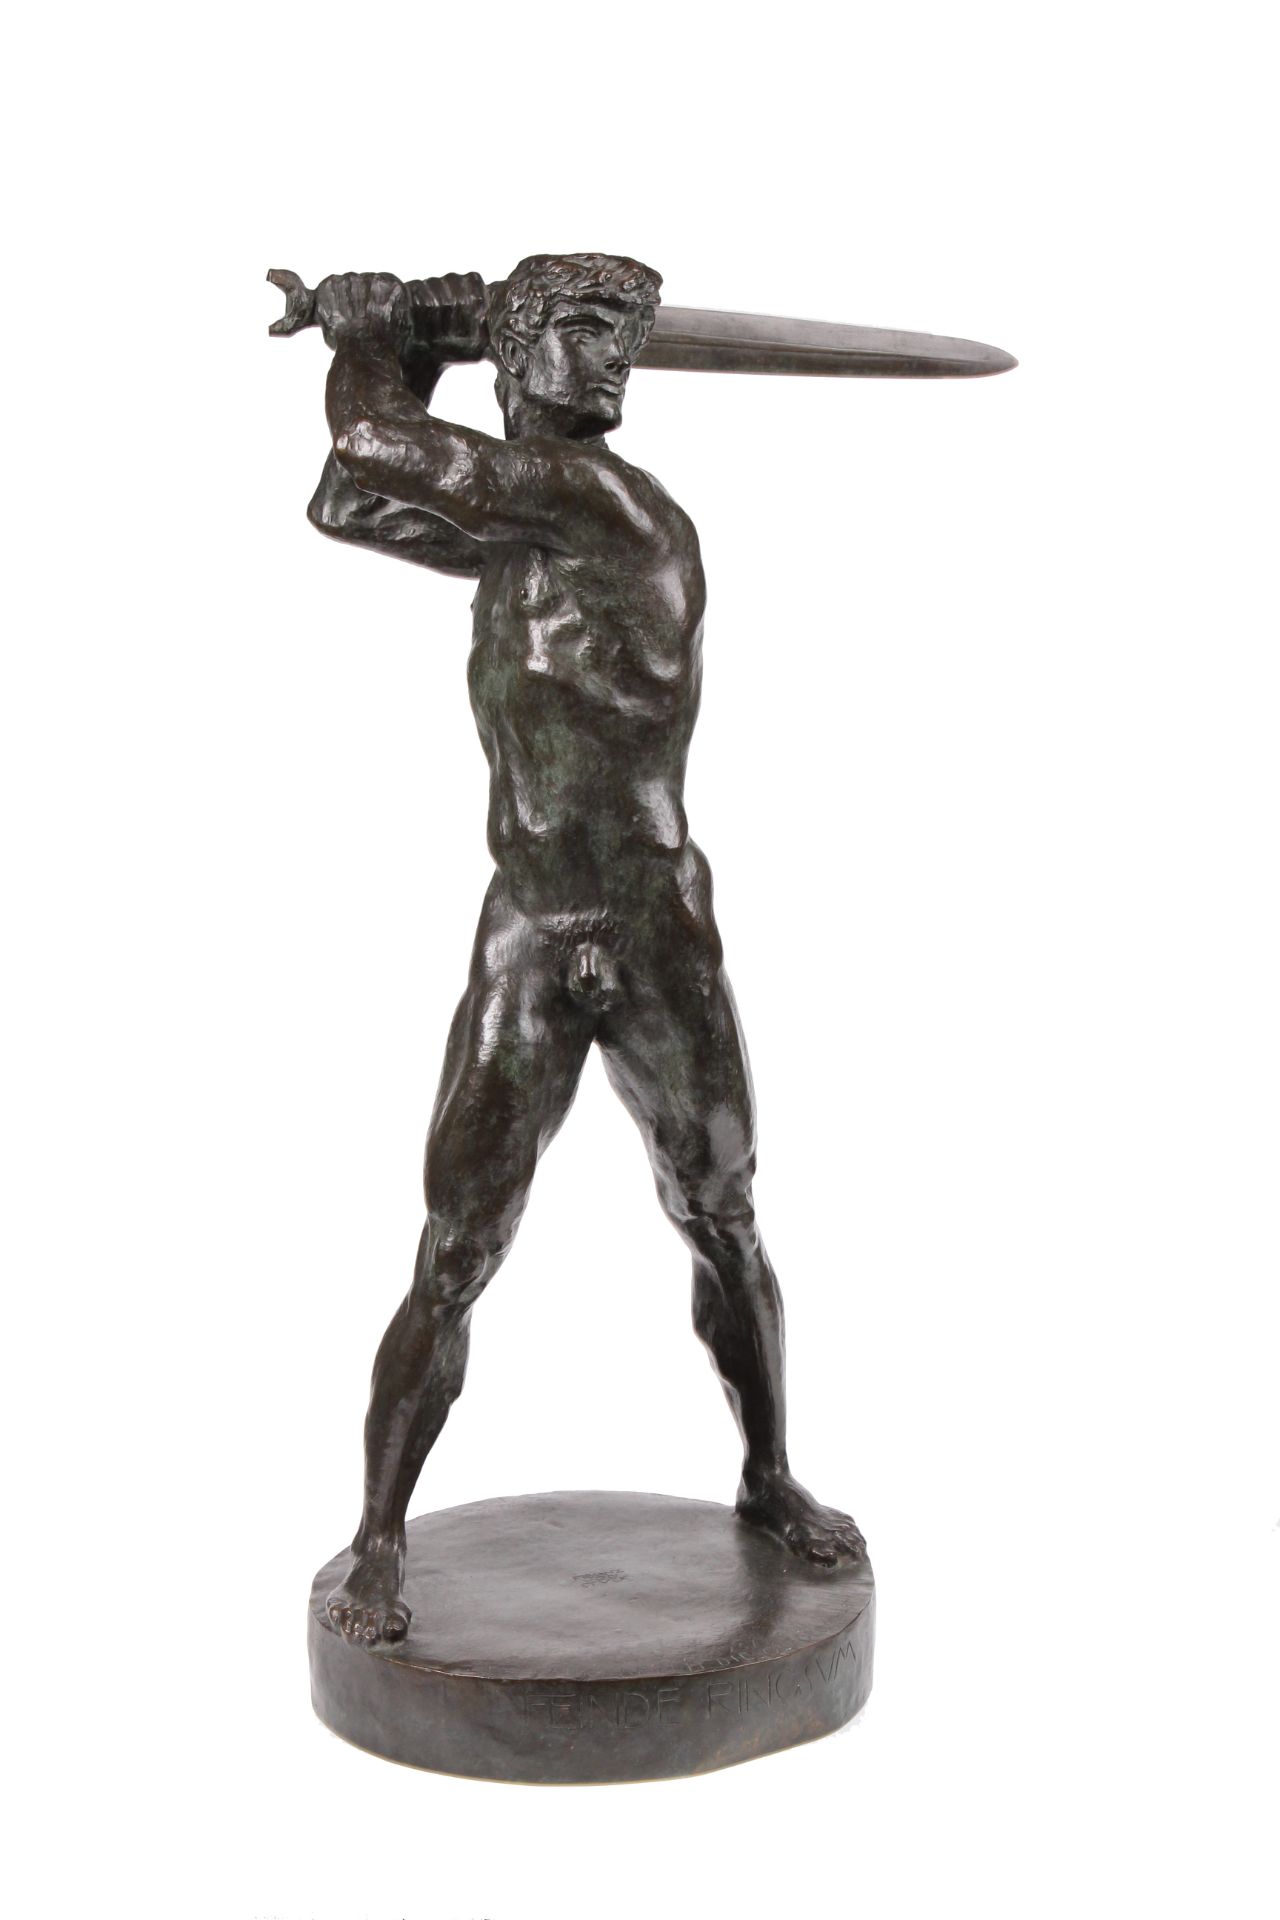 Franz von Stuck. Tettenweis 1863-1928 München. "FEINDE RINGSUM" Bronze, dunkelbraun patinier